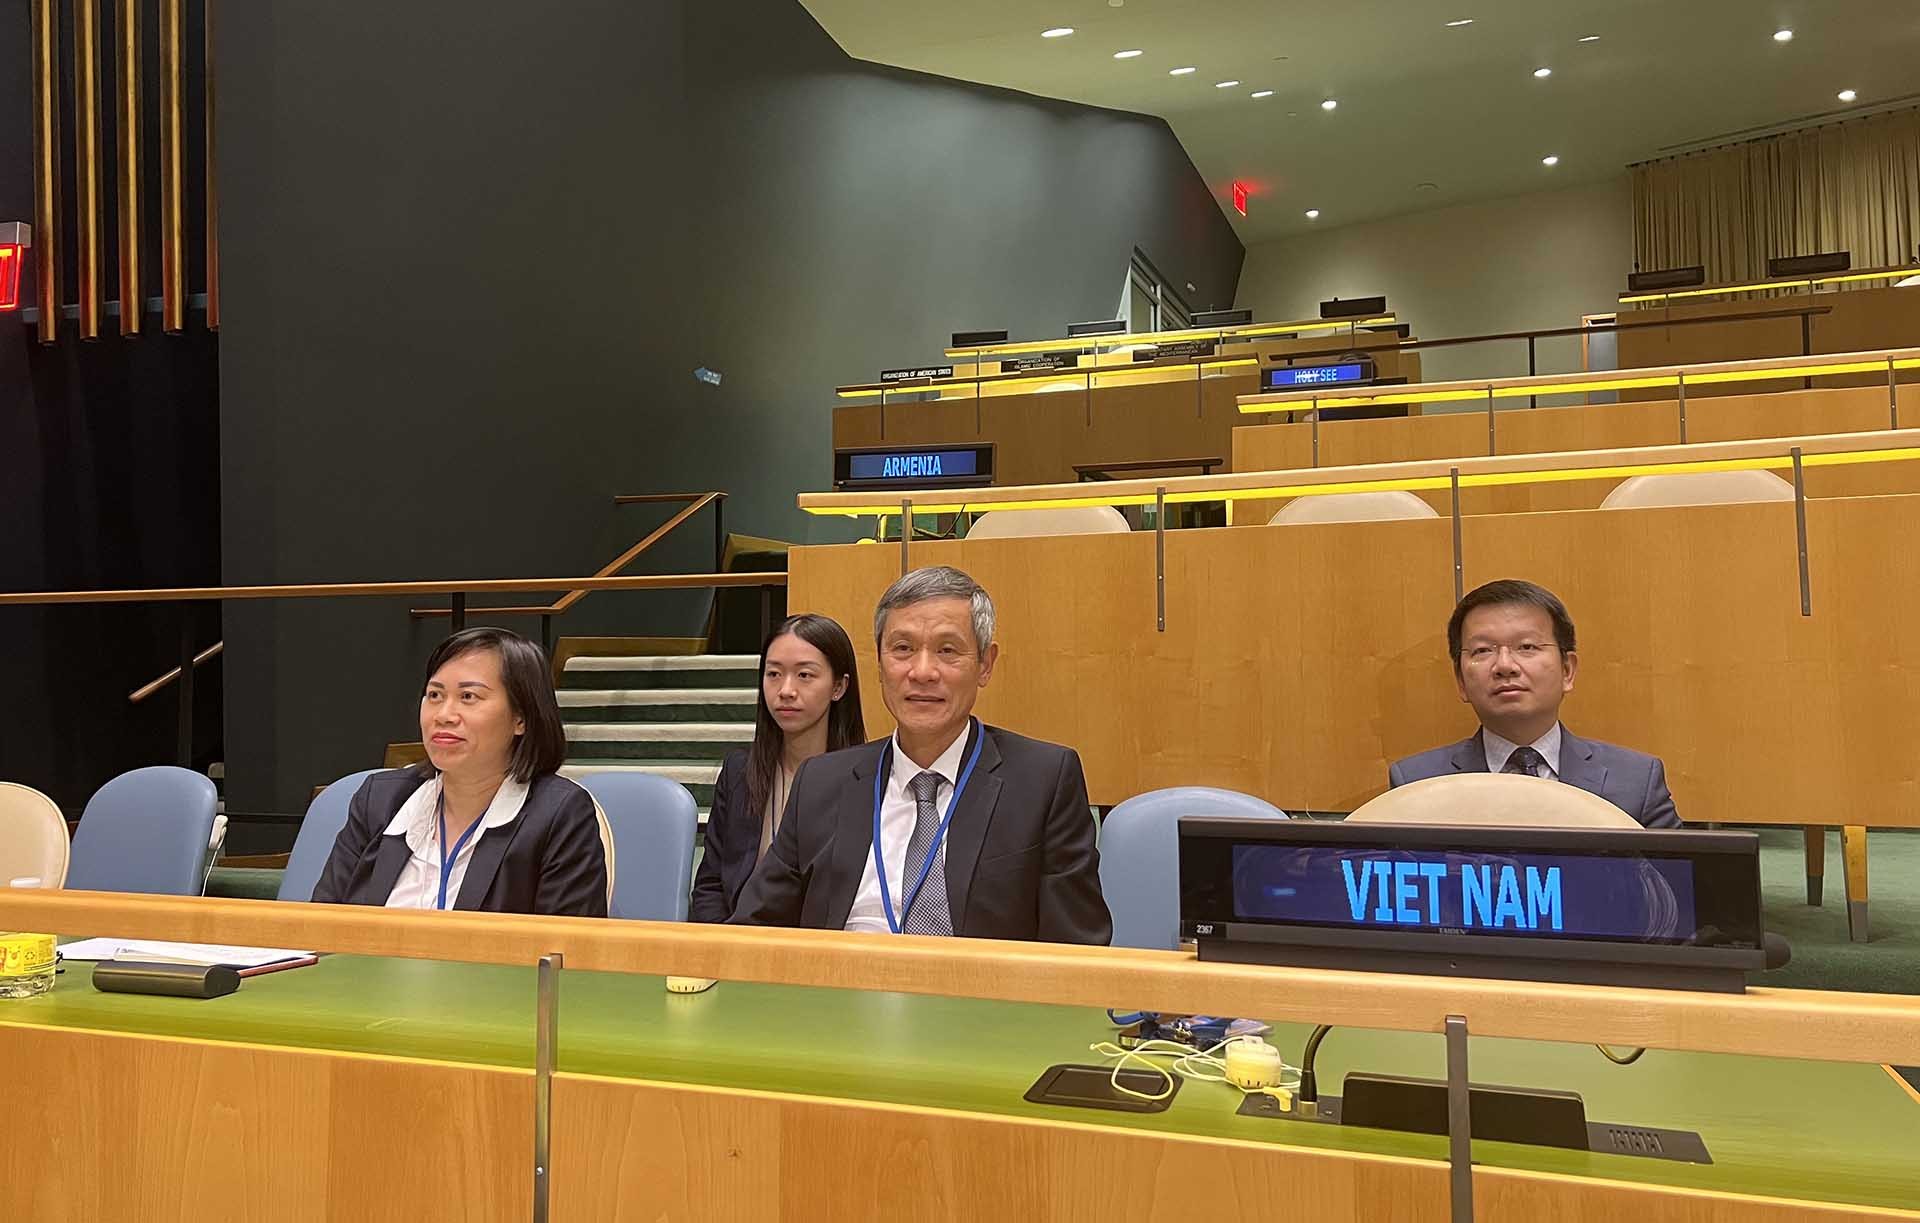 Nhân dịp tham dự Tuần lễ luật pháp quốc tế của Liên hợp quốc, Trợ lý Bộ trưởng Ngoại giao Nguyễn Minh Vũ đã có bài phát biểu khai mạc hội nghị.